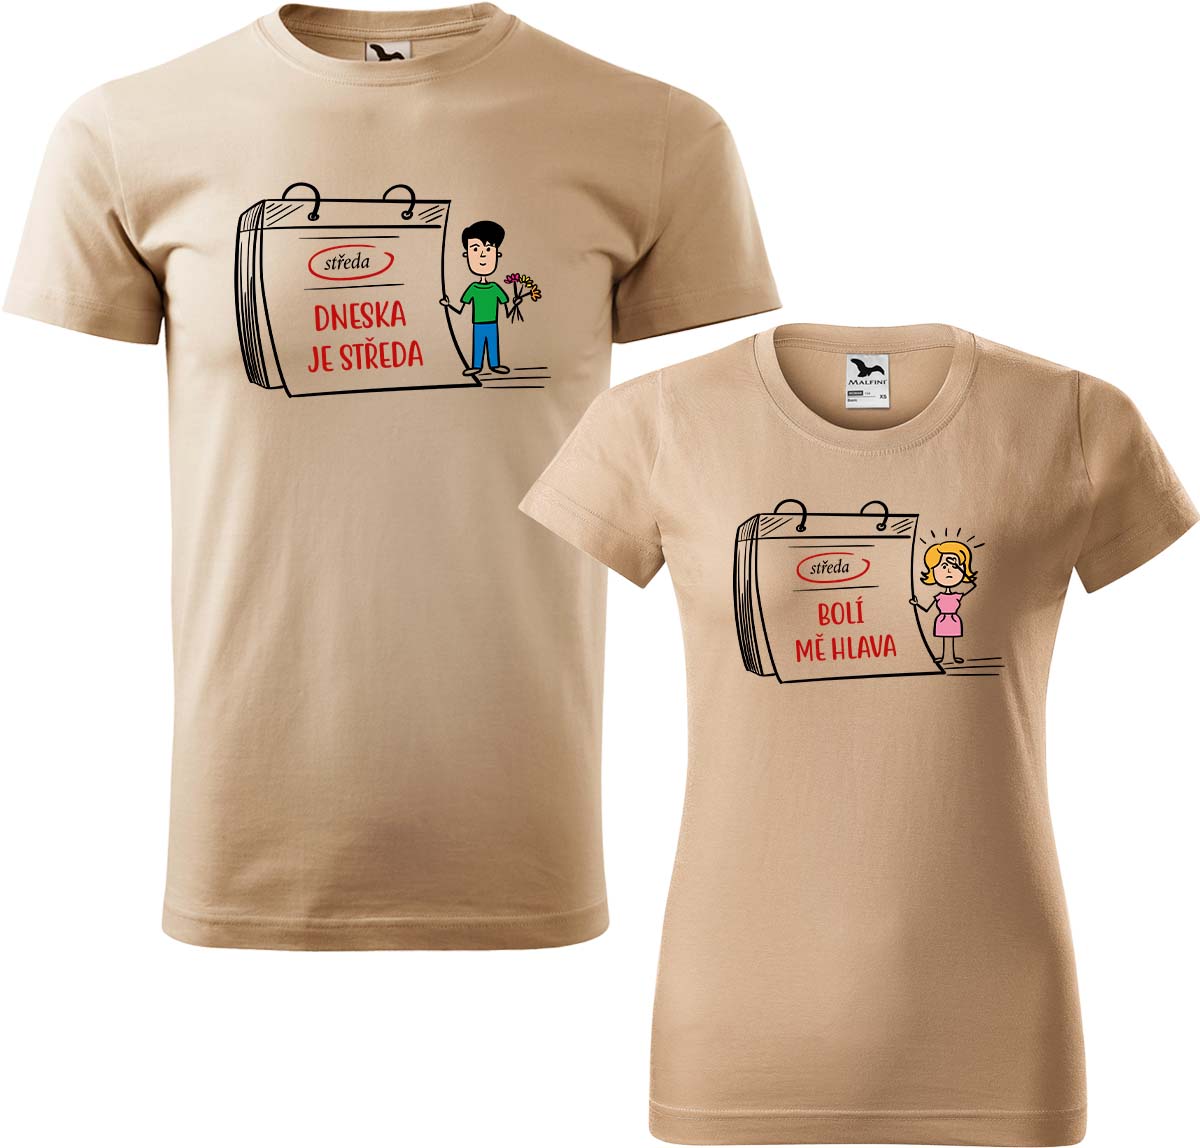 Trička pro páry - Dneska je středa Barva: Písková (08), Velikost dámské tričko: S, Velikost pánské tričko: M